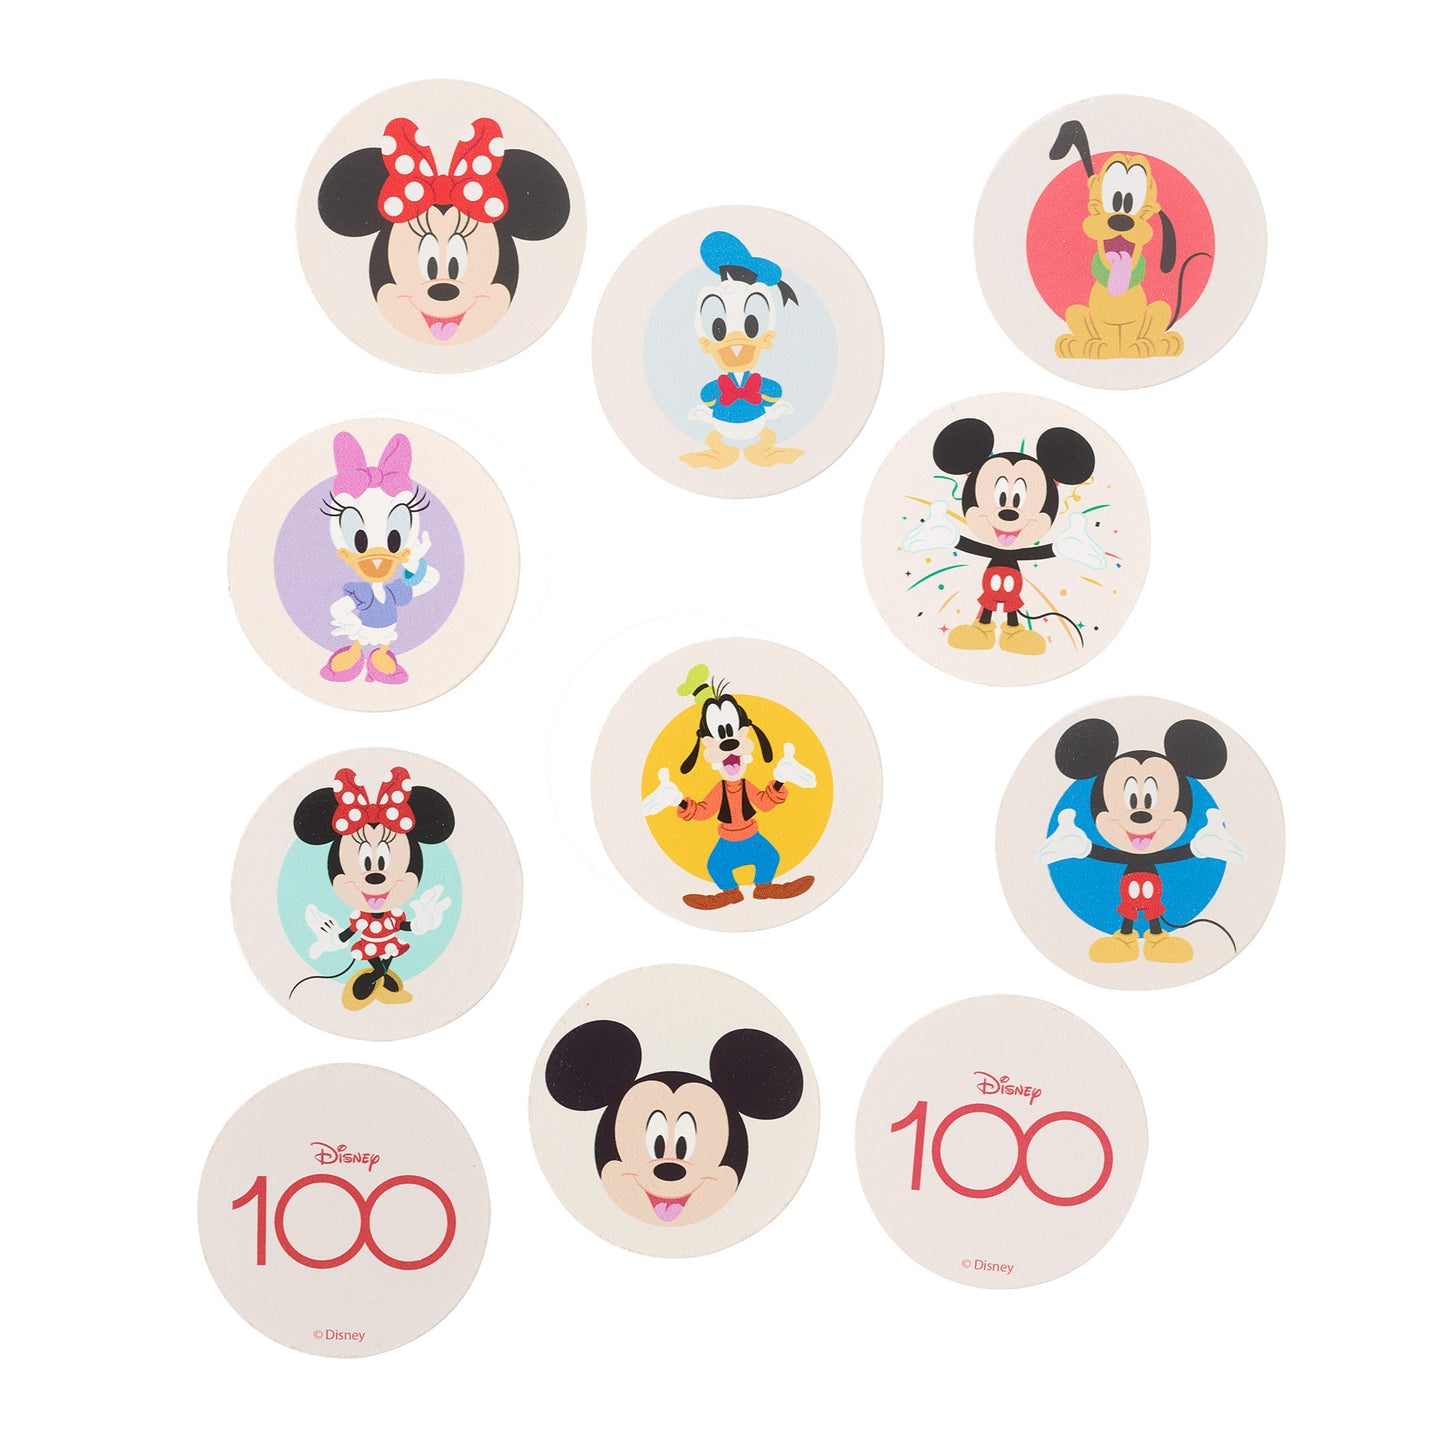 Disney 100 Classic Memory Game